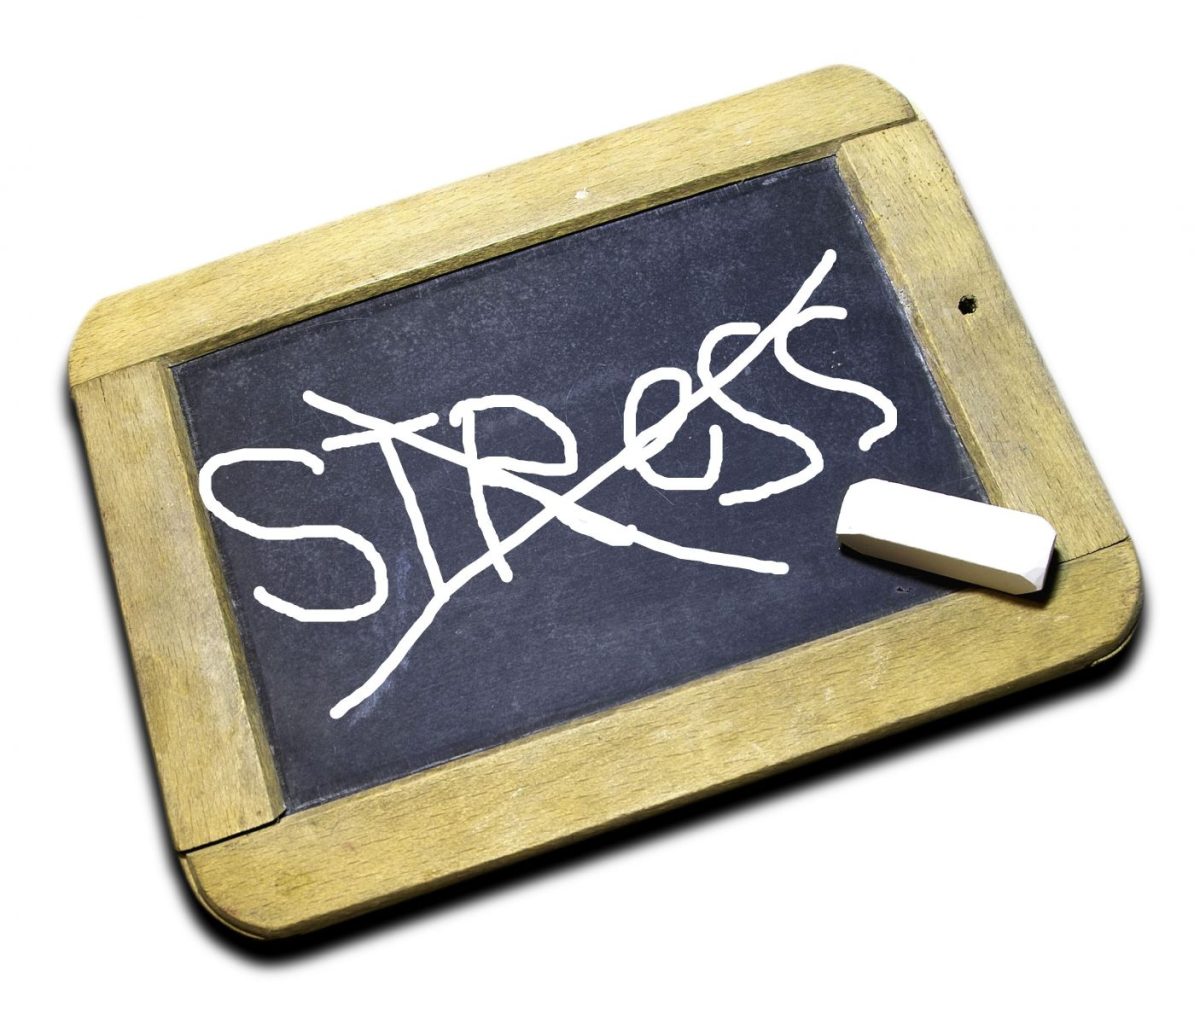 Stressmanagement voor beginners